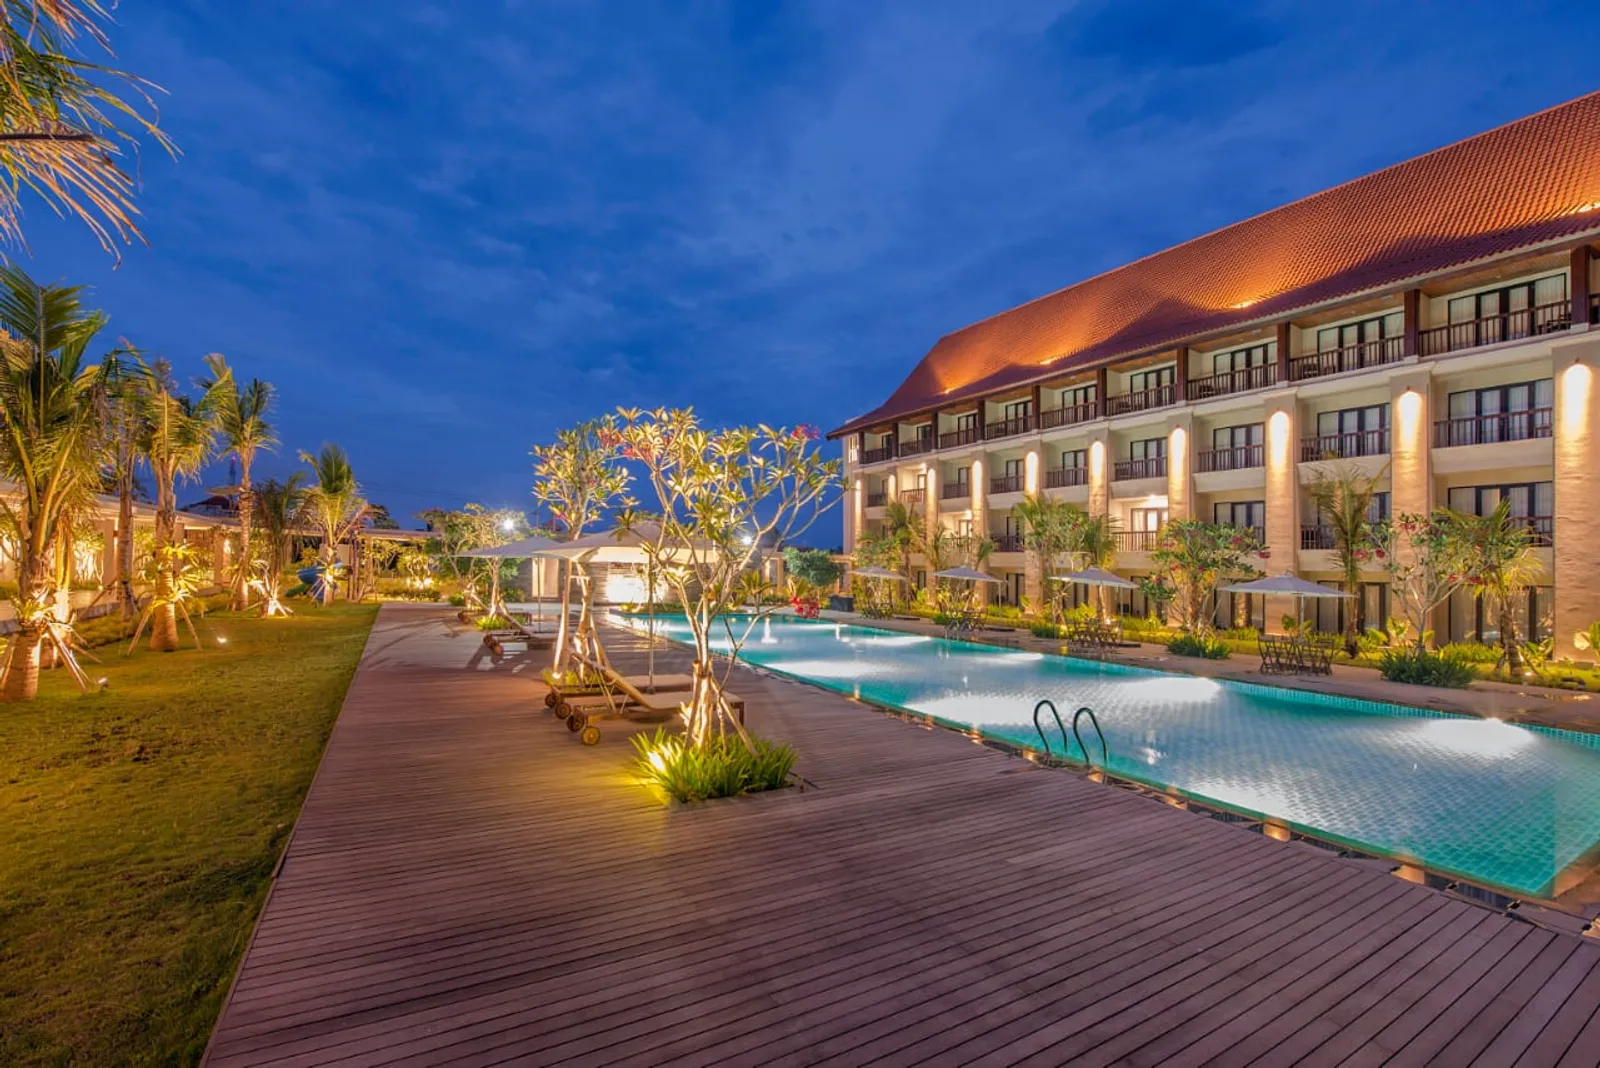 8 Rekomendasi Hotel Nyaman di Banyuwangi, Jawa Timur